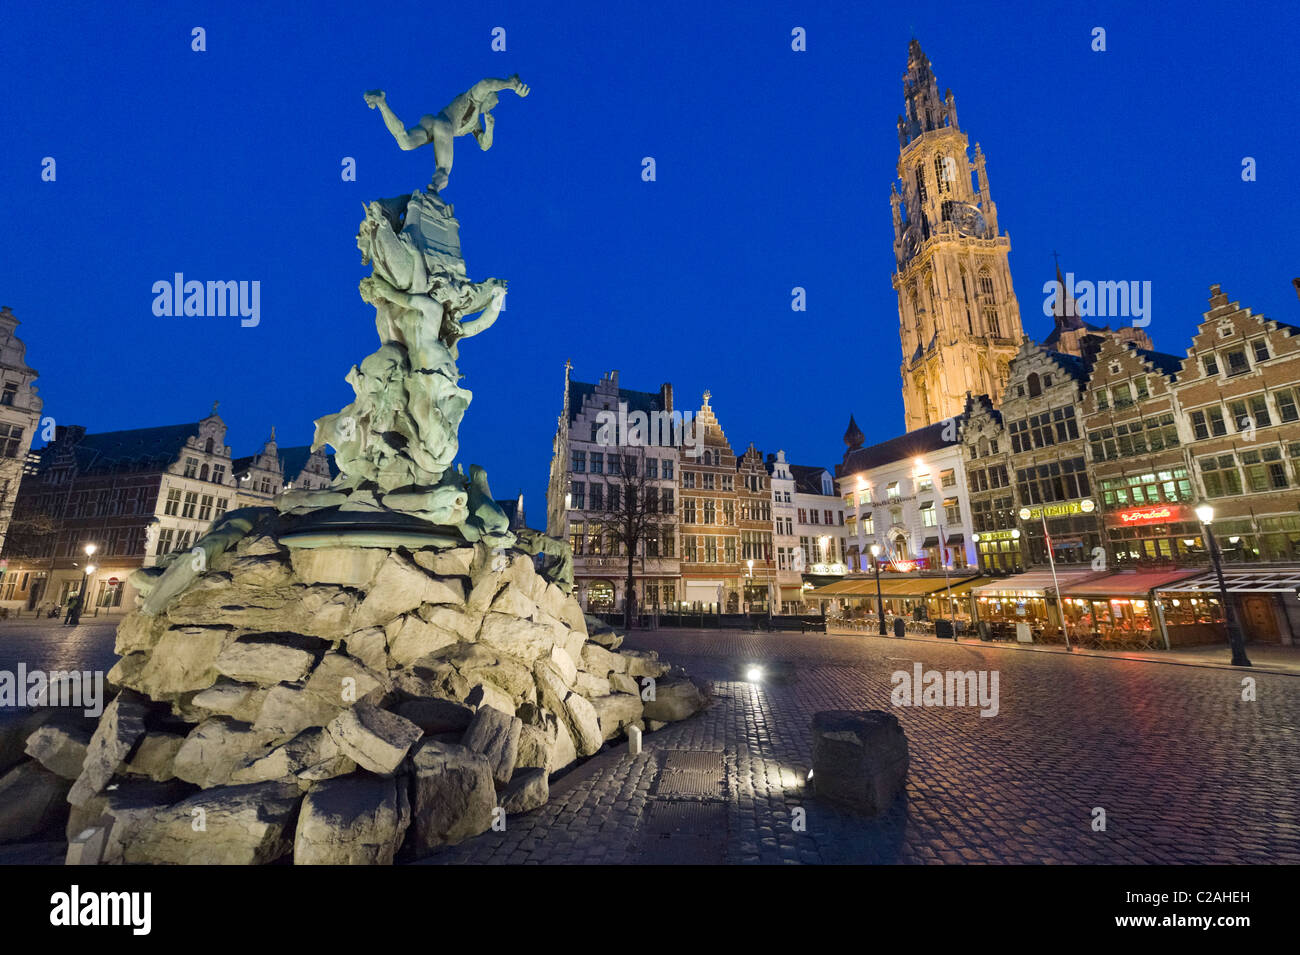 Brabo Fontana di Grote Mark (piazza principale) di notte con Onze Lieve Vrouwekathedraal (cattedrale) dietro, Anversa, Belgio Foto Stock